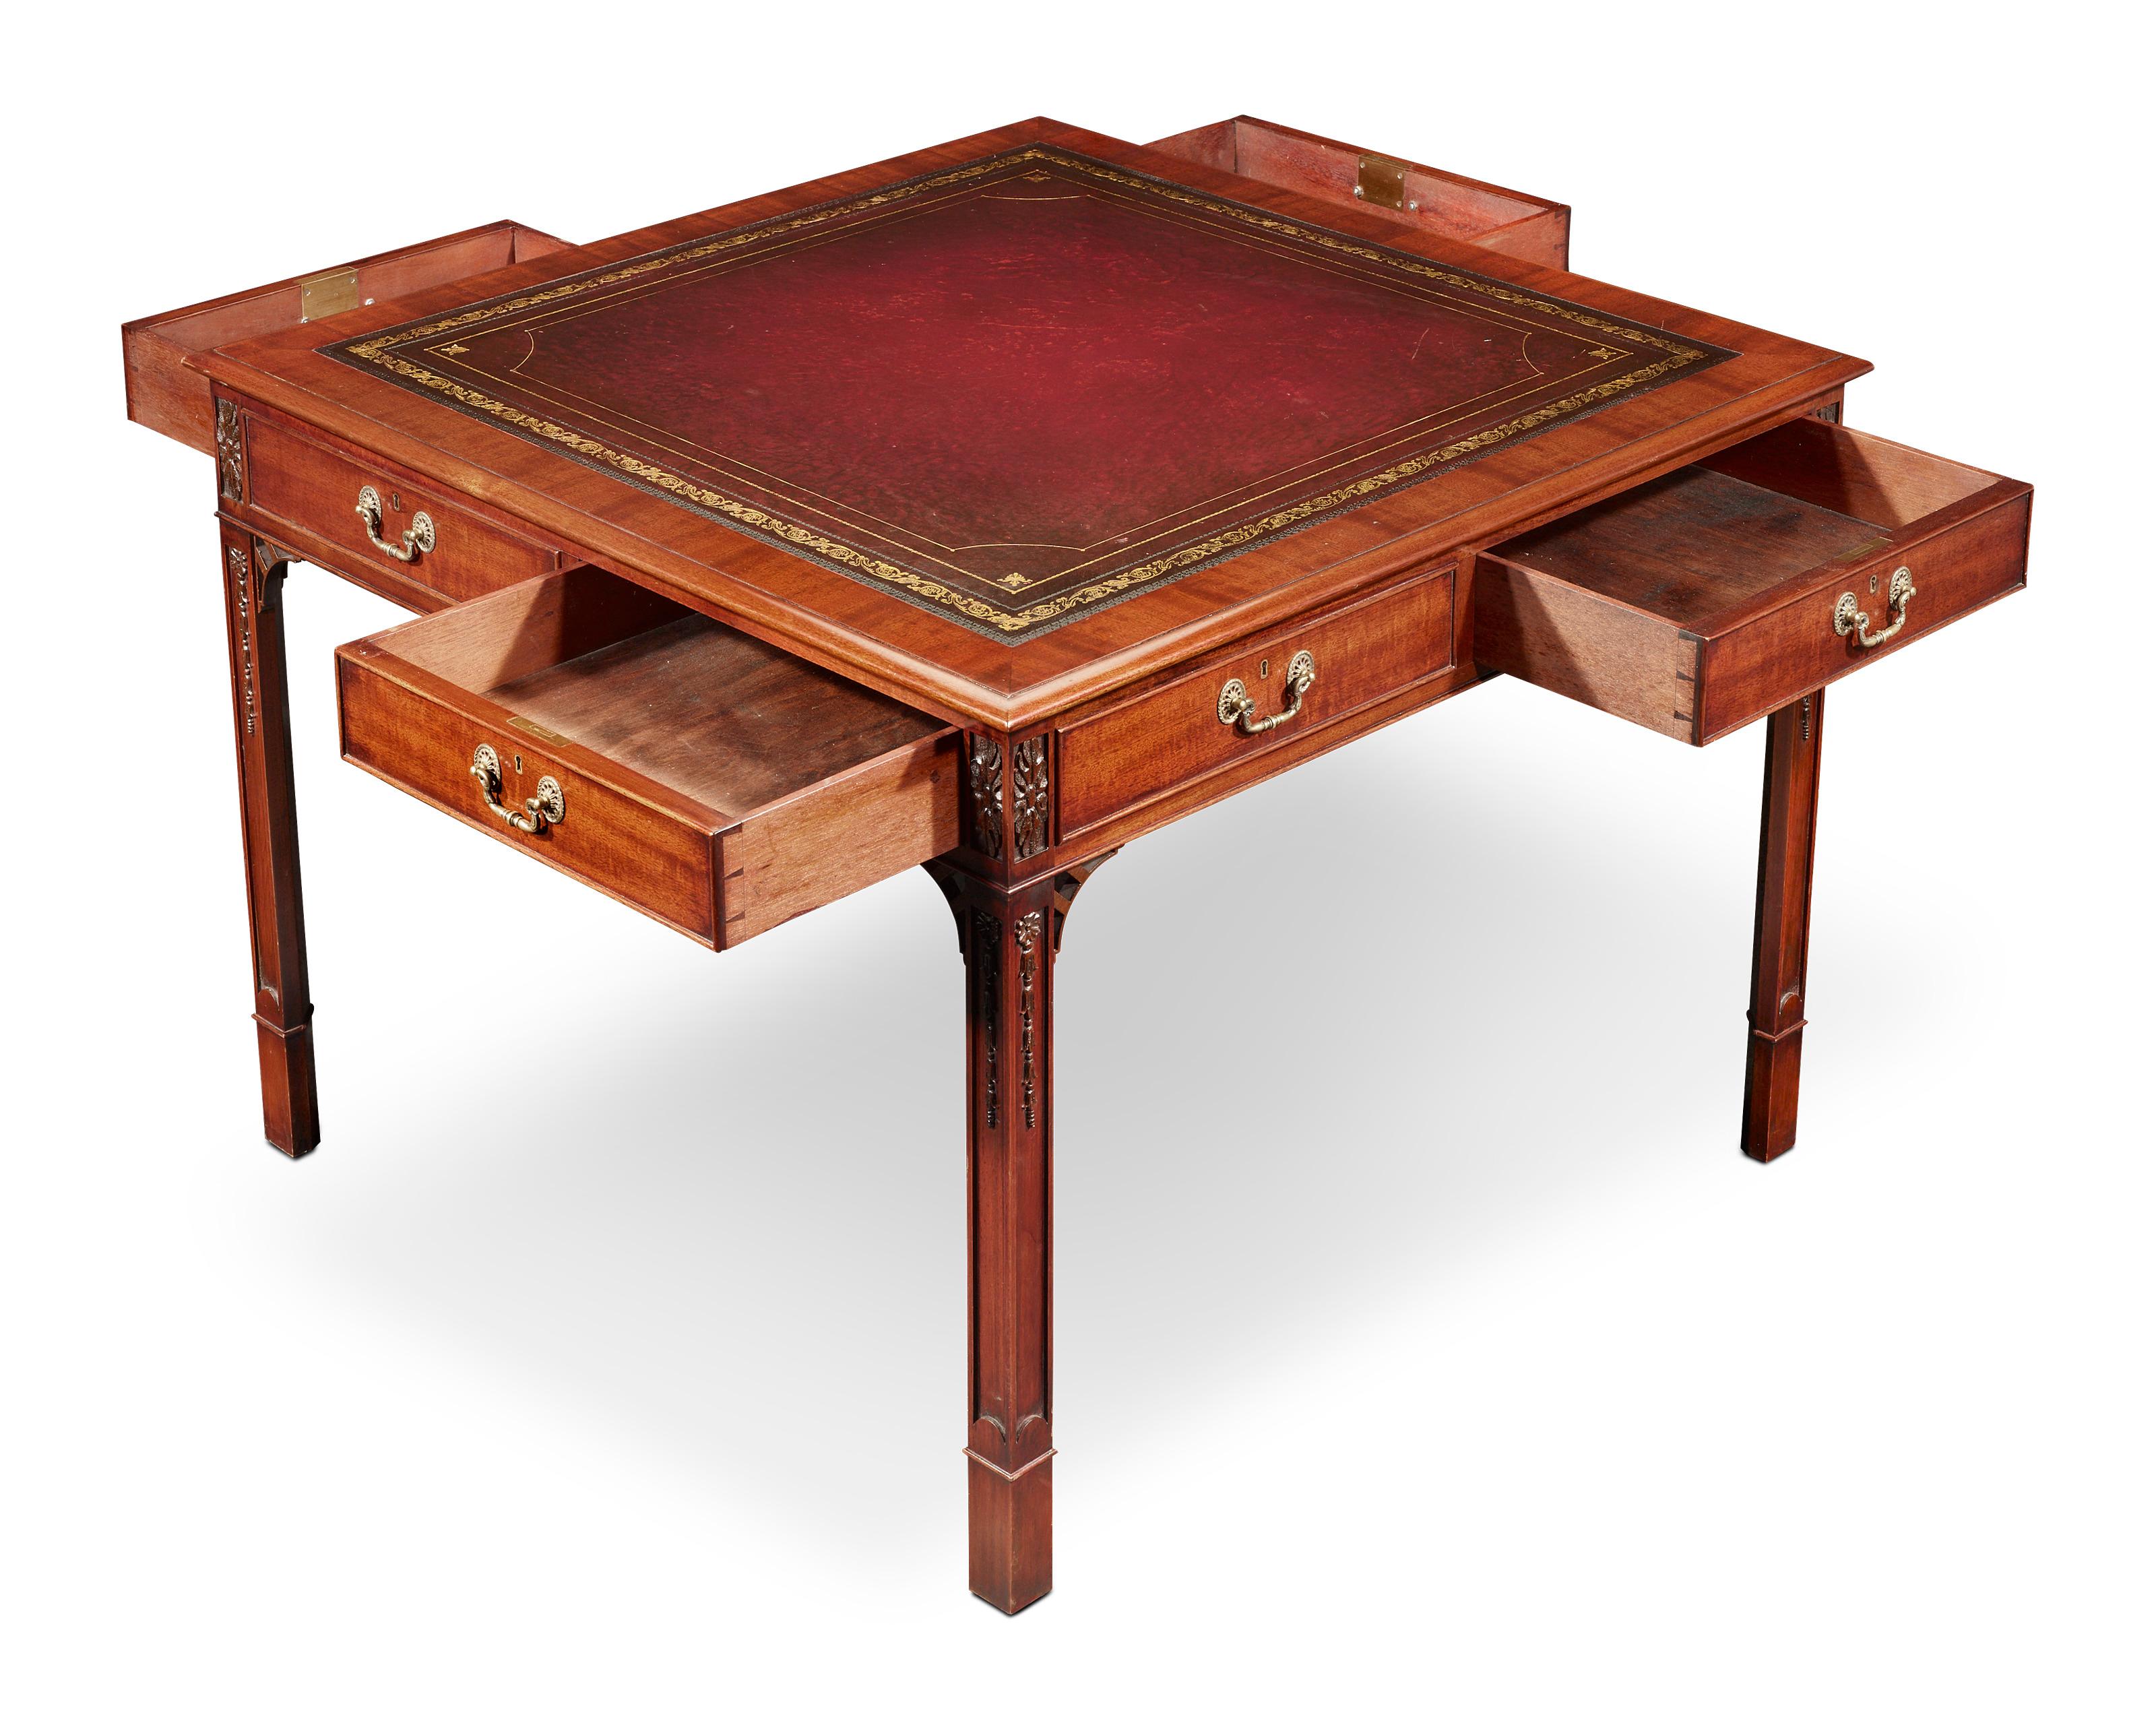 Dieser aus reichem Mahagoni gefertigte Bibliothekstisch zeigt die ganze Raffinesse, für die Möbel aus der Regency-Ära bekannt sind. Dieser Tisch zeichnet sich durch ein schlichtes Design mit schön geschnitzten Details an den Beinen und am Fries aus.